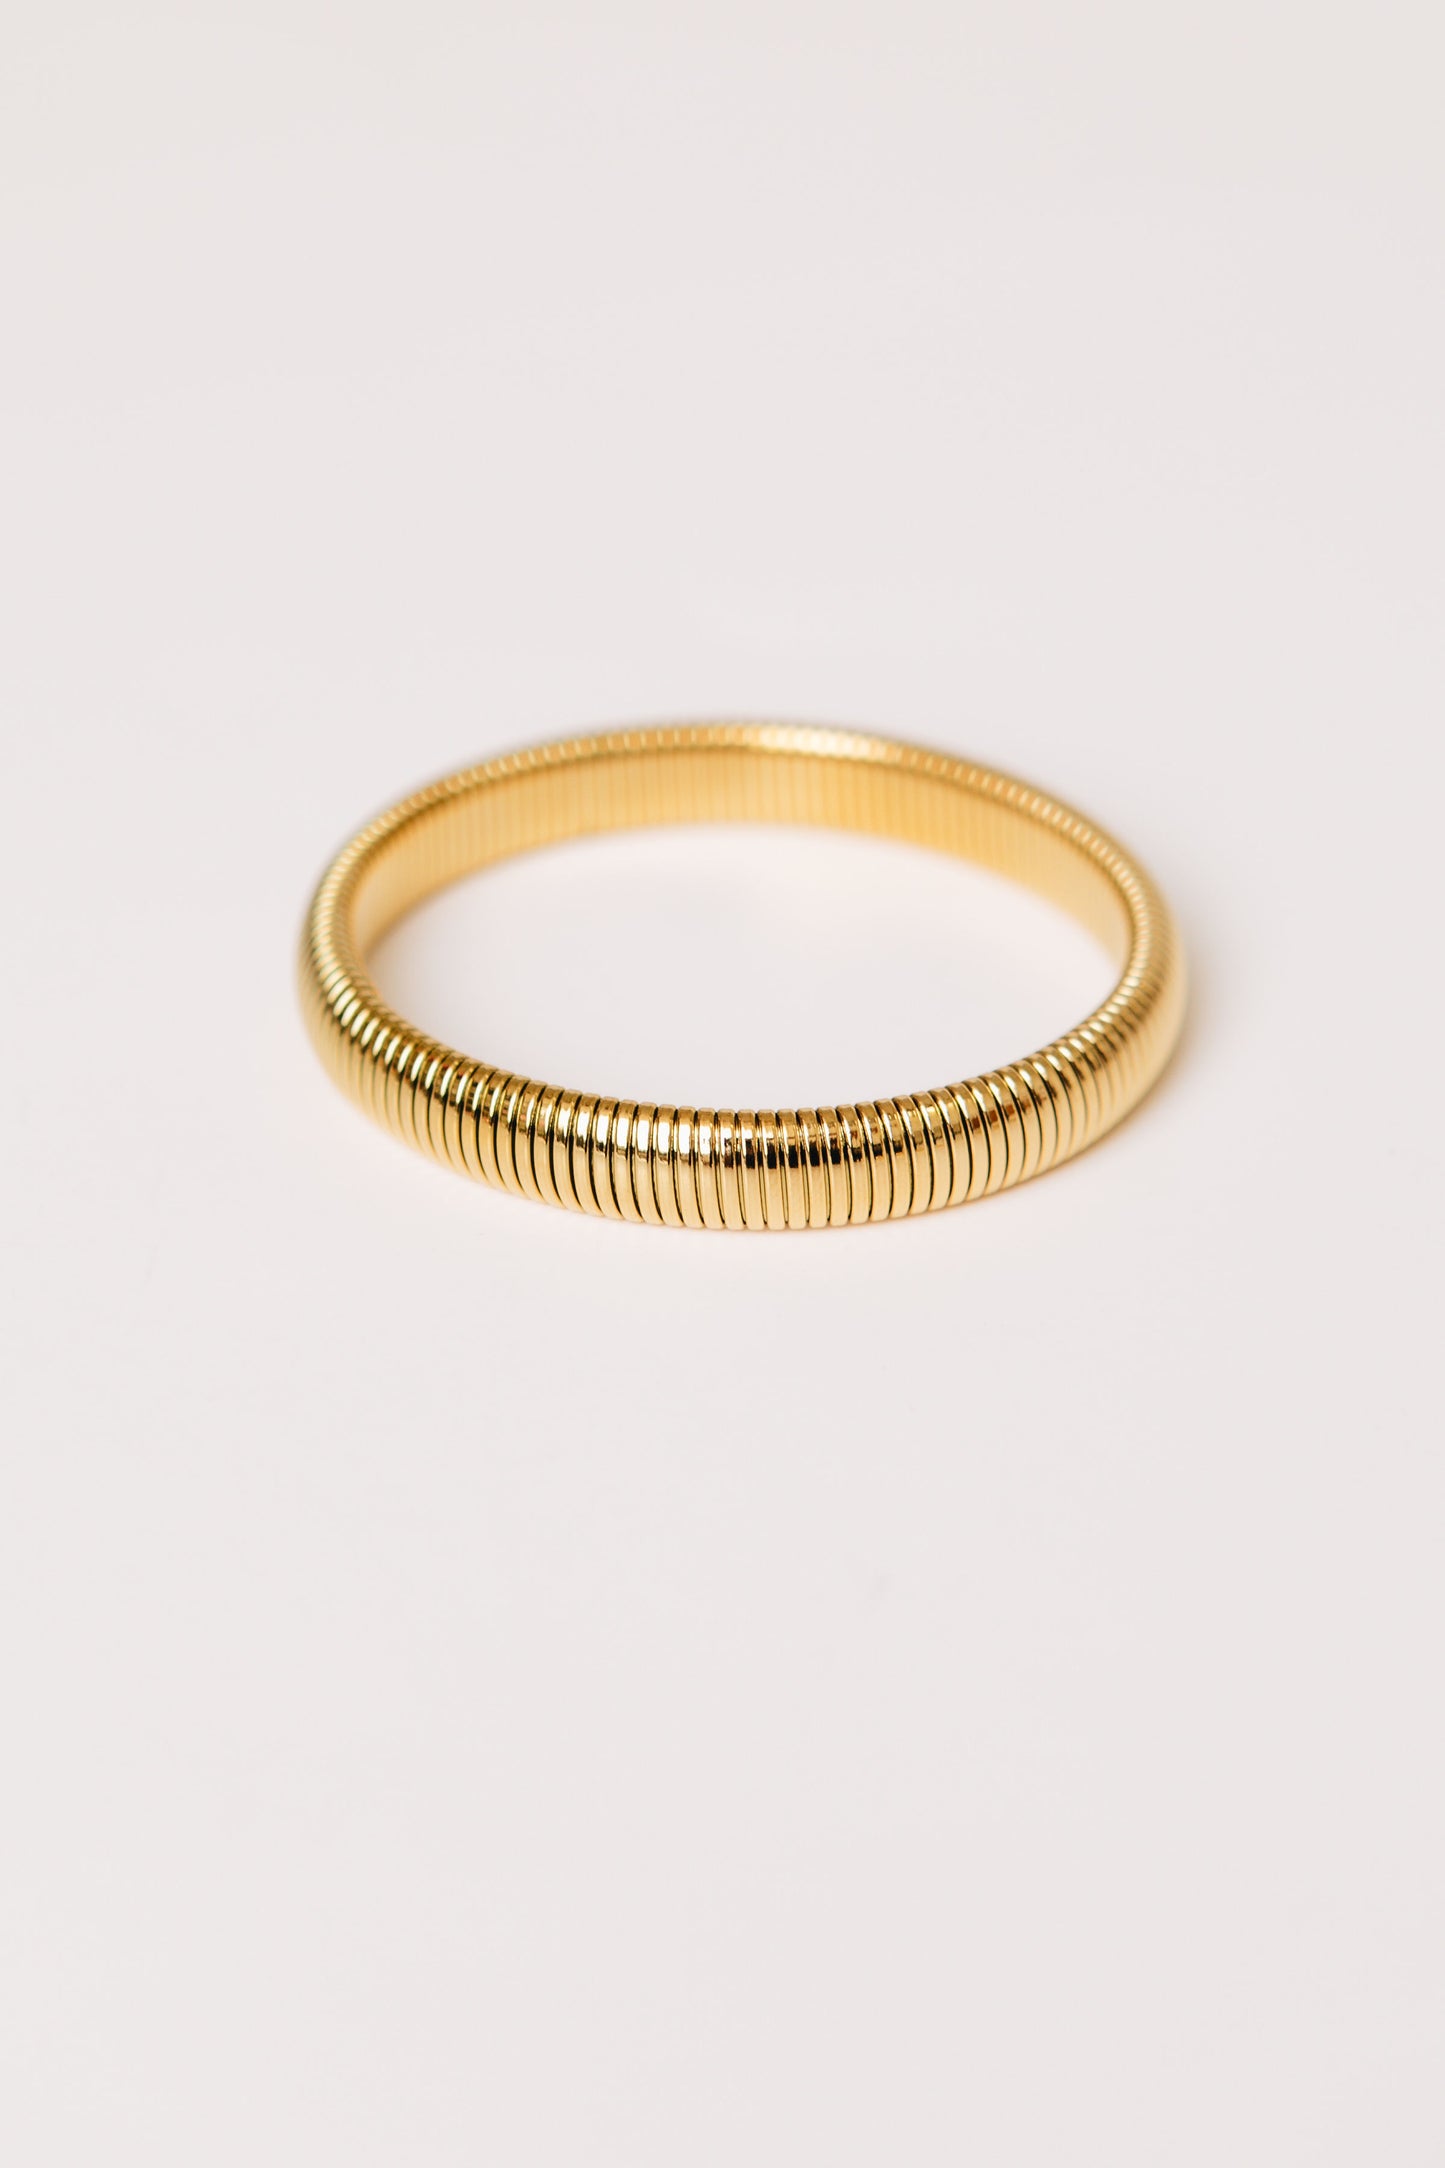 Celeste Chic Gold Plated Stretch Bracelet (L)